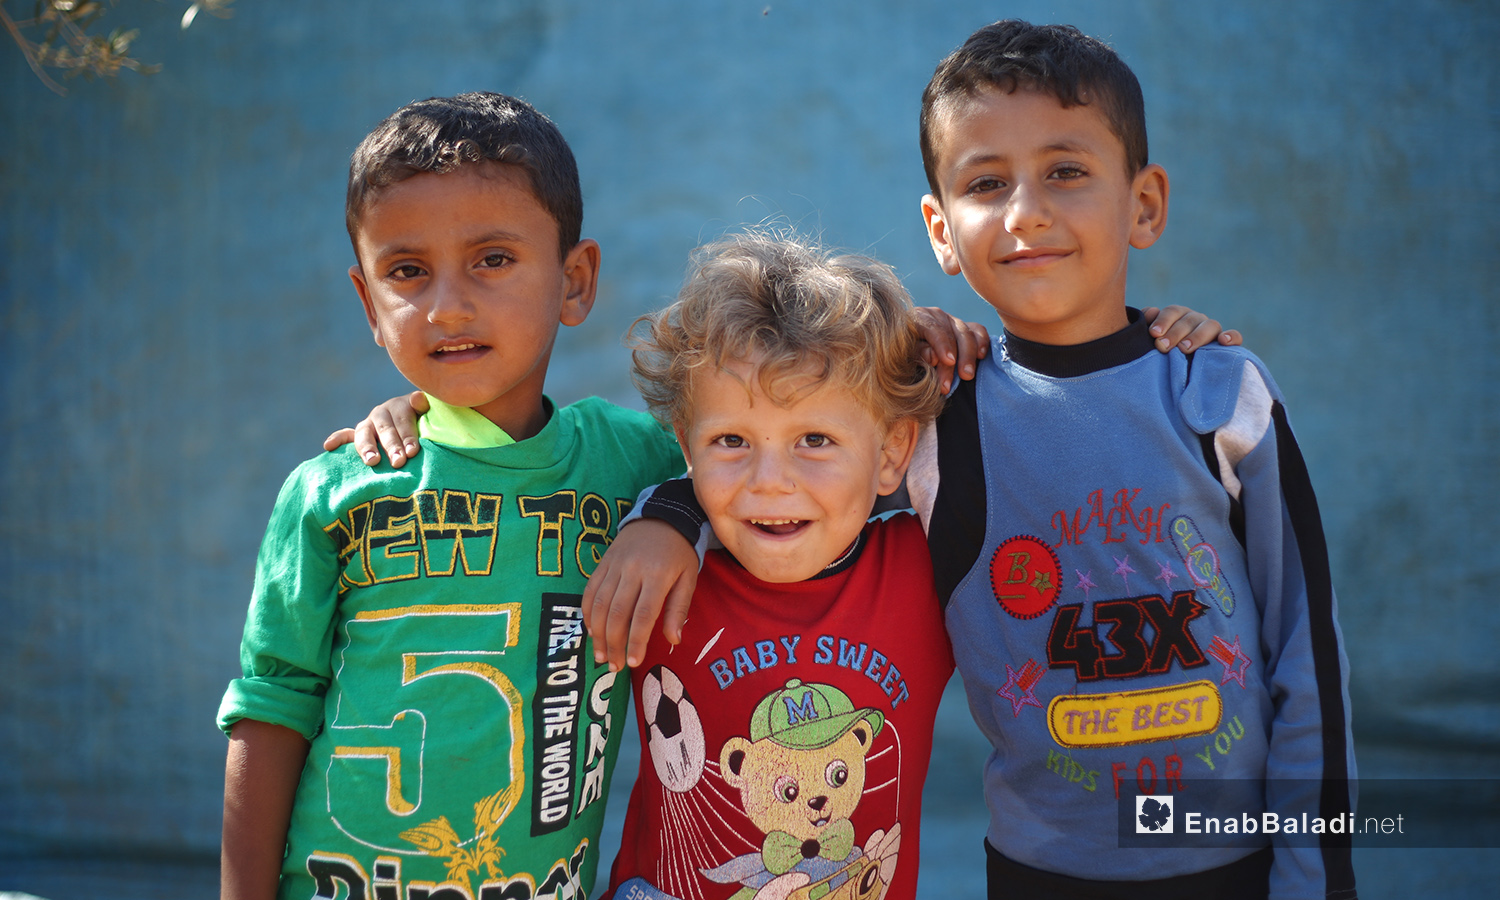 ينظر الأطفال في مخيم "المطار" مبتسمين إلى الكاميرات التي أتت لرصد حياتهم في المخيم الأخضر  - تشرين الأول 2020 (عنب بلدي/ يوسف غريبي)